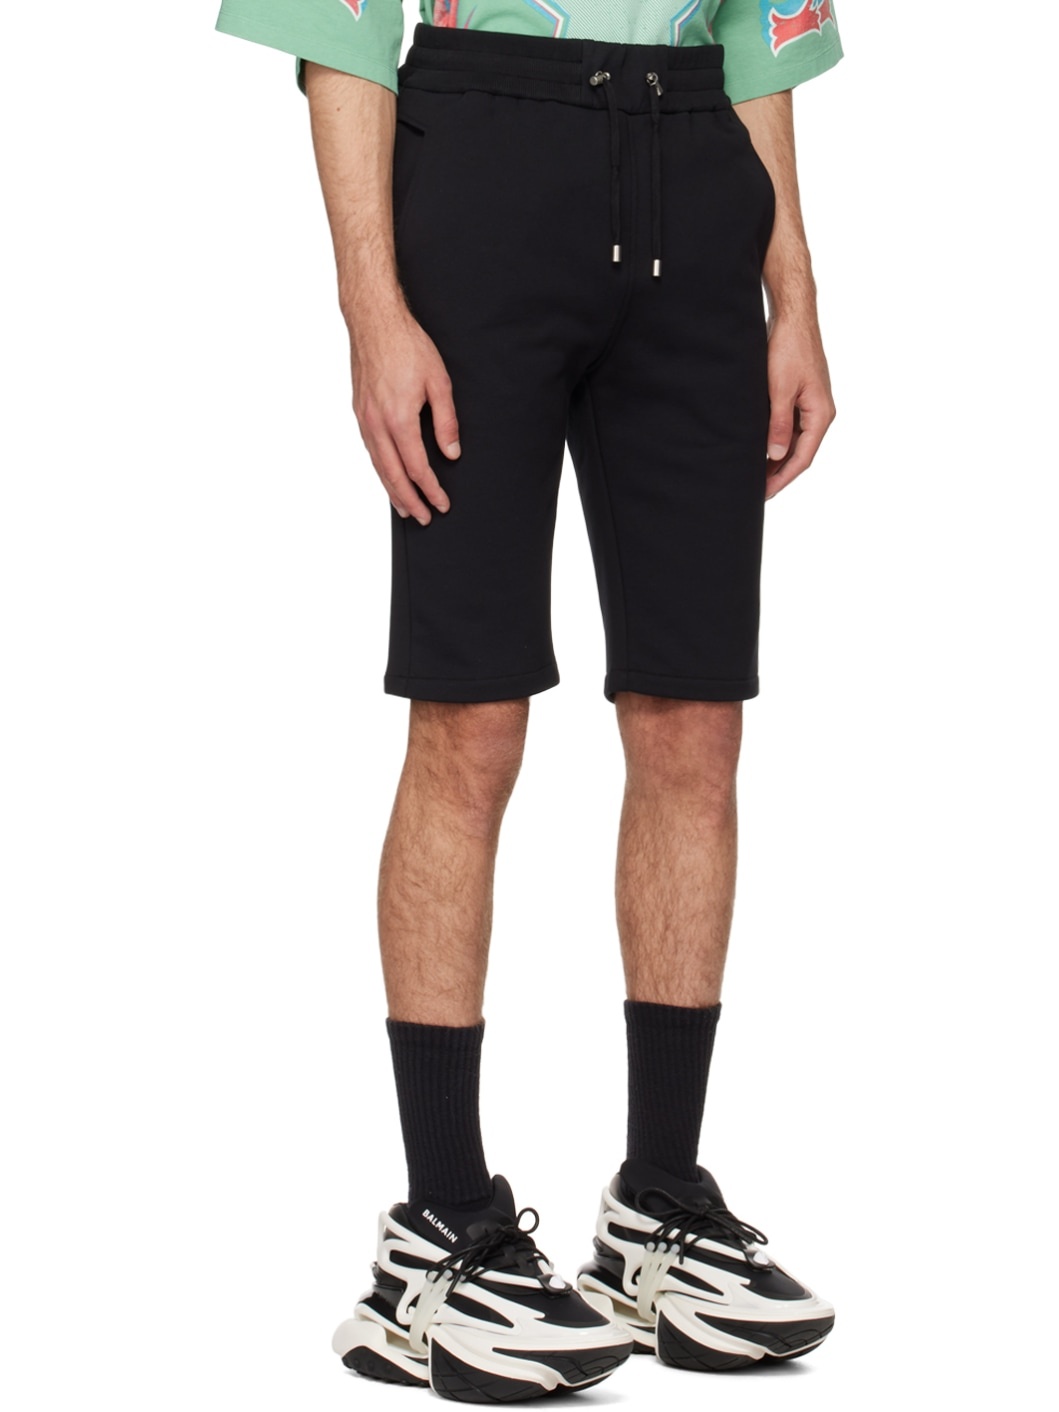 Black Flocked Shorts - 2